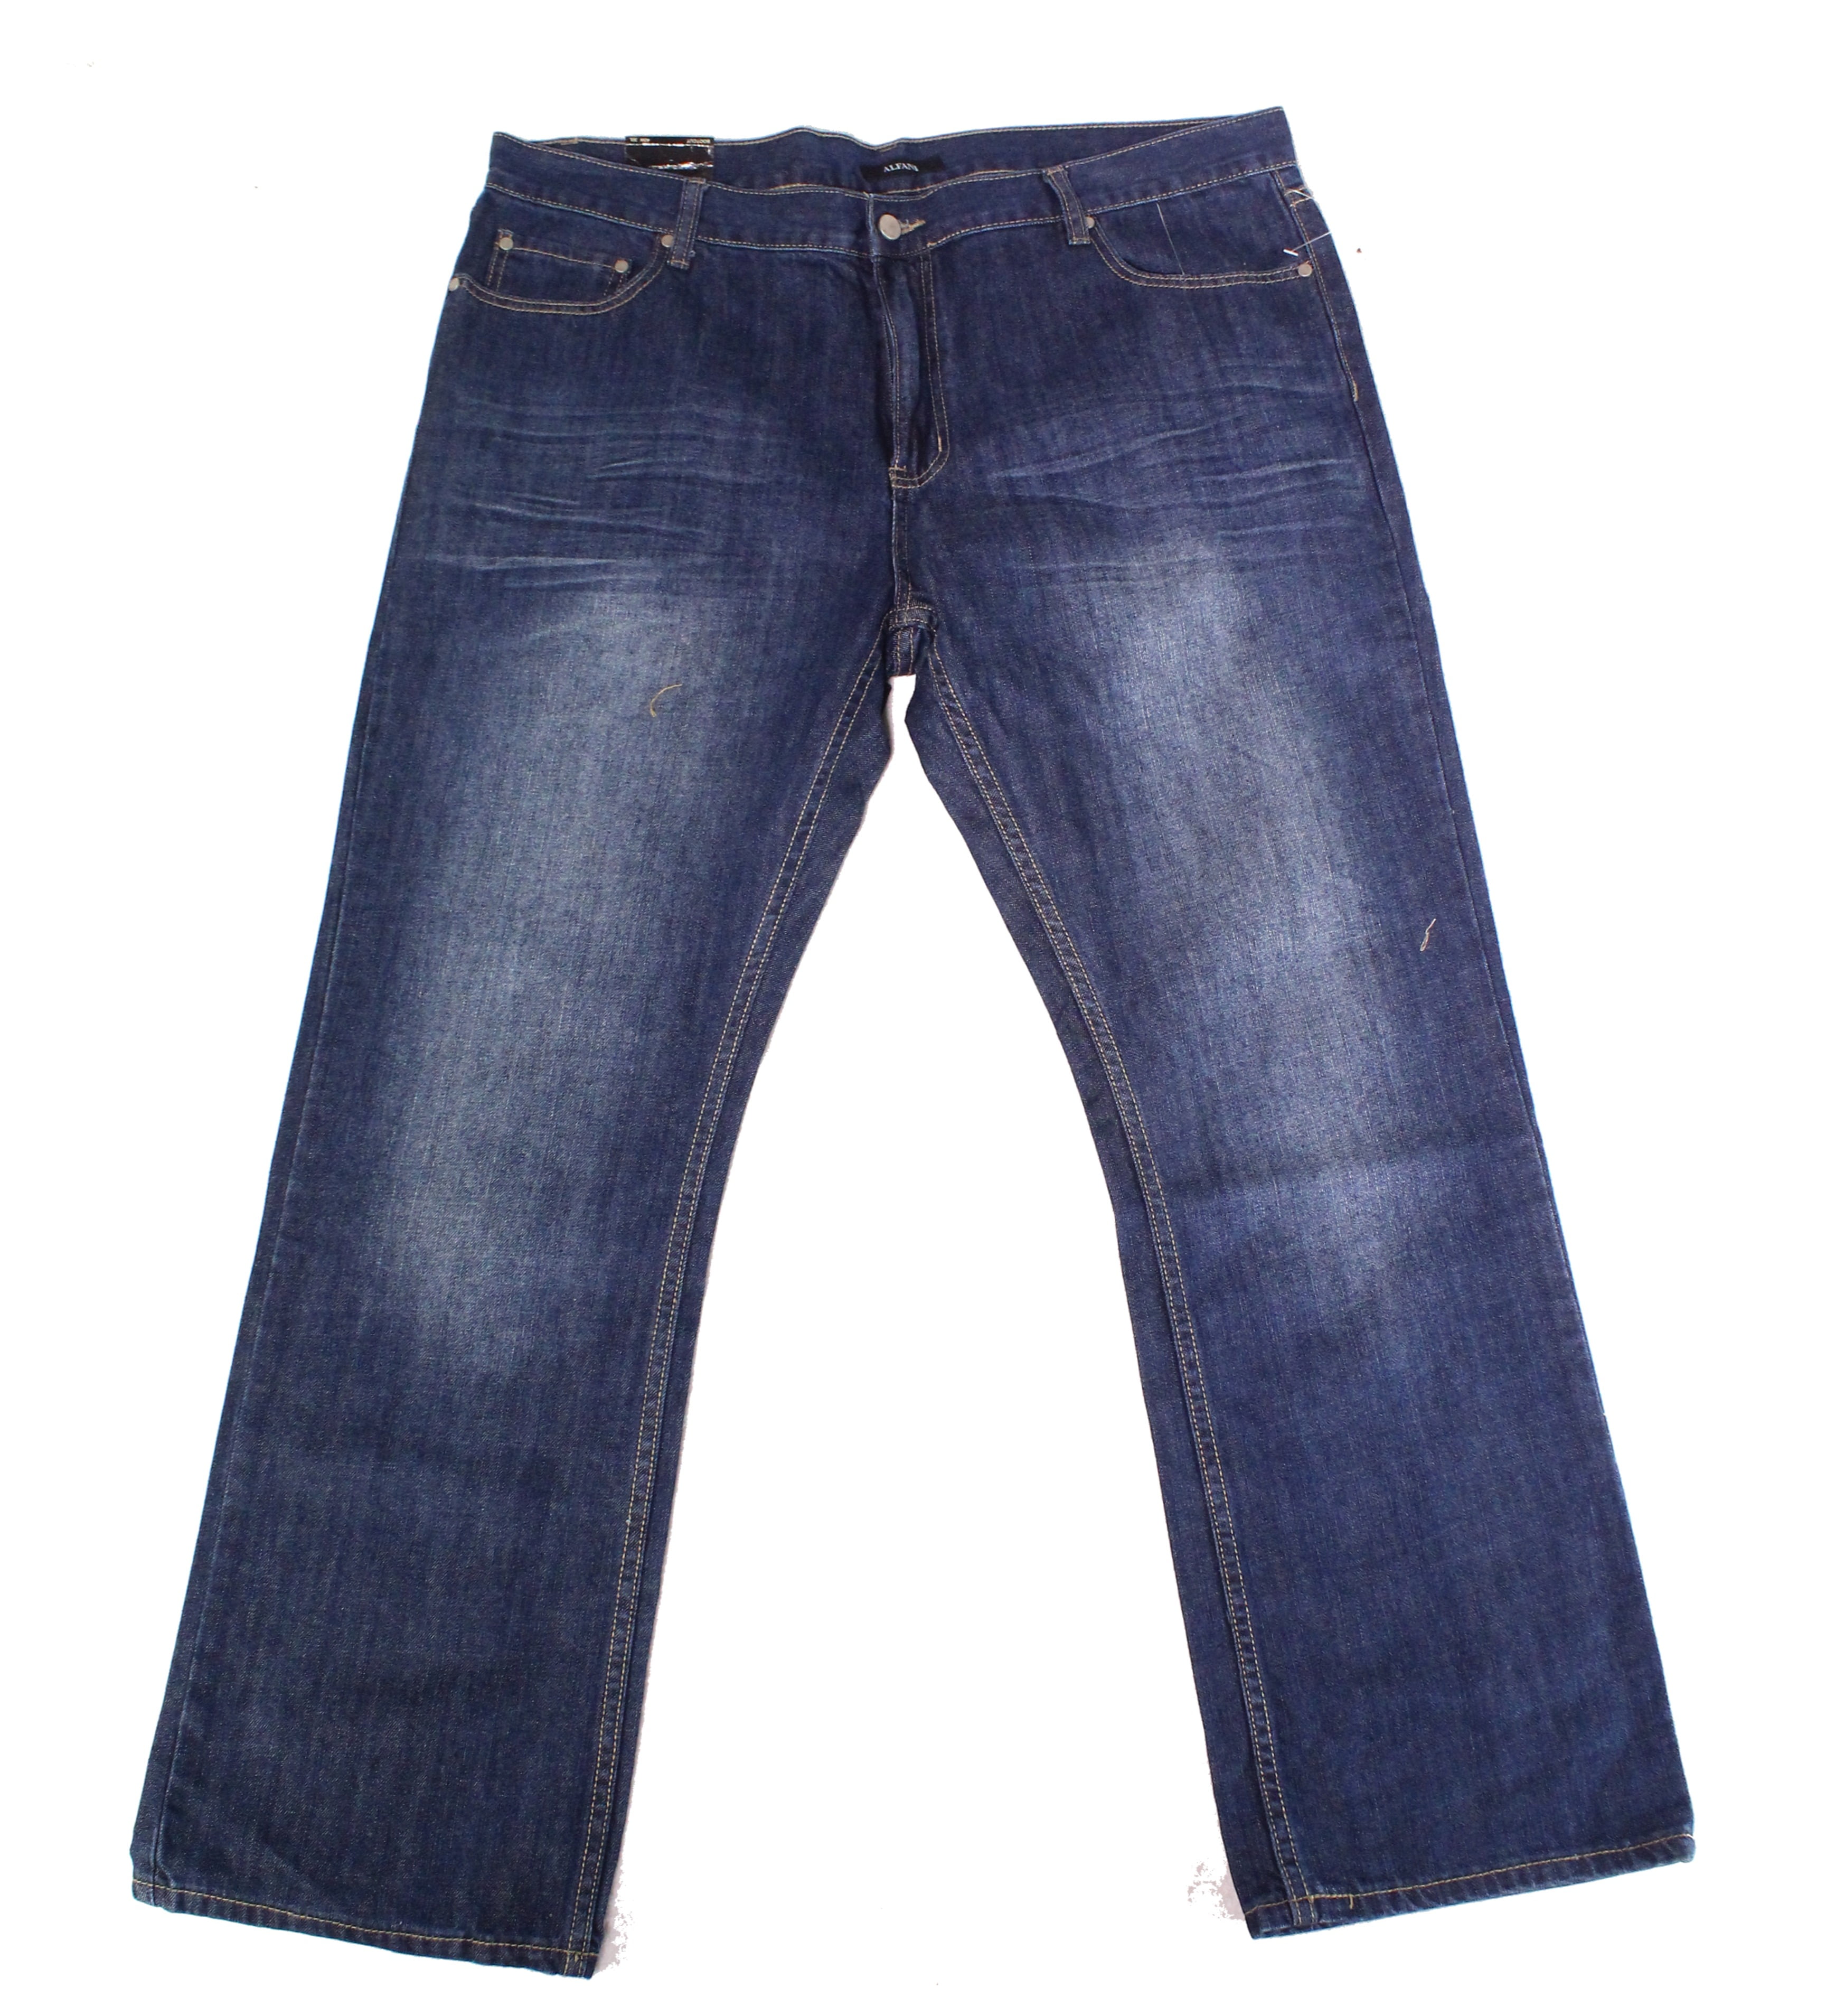 Alfani - Mens Jeans Dark Wash 40x30 Classic Straight Leg Stretch 40 ...